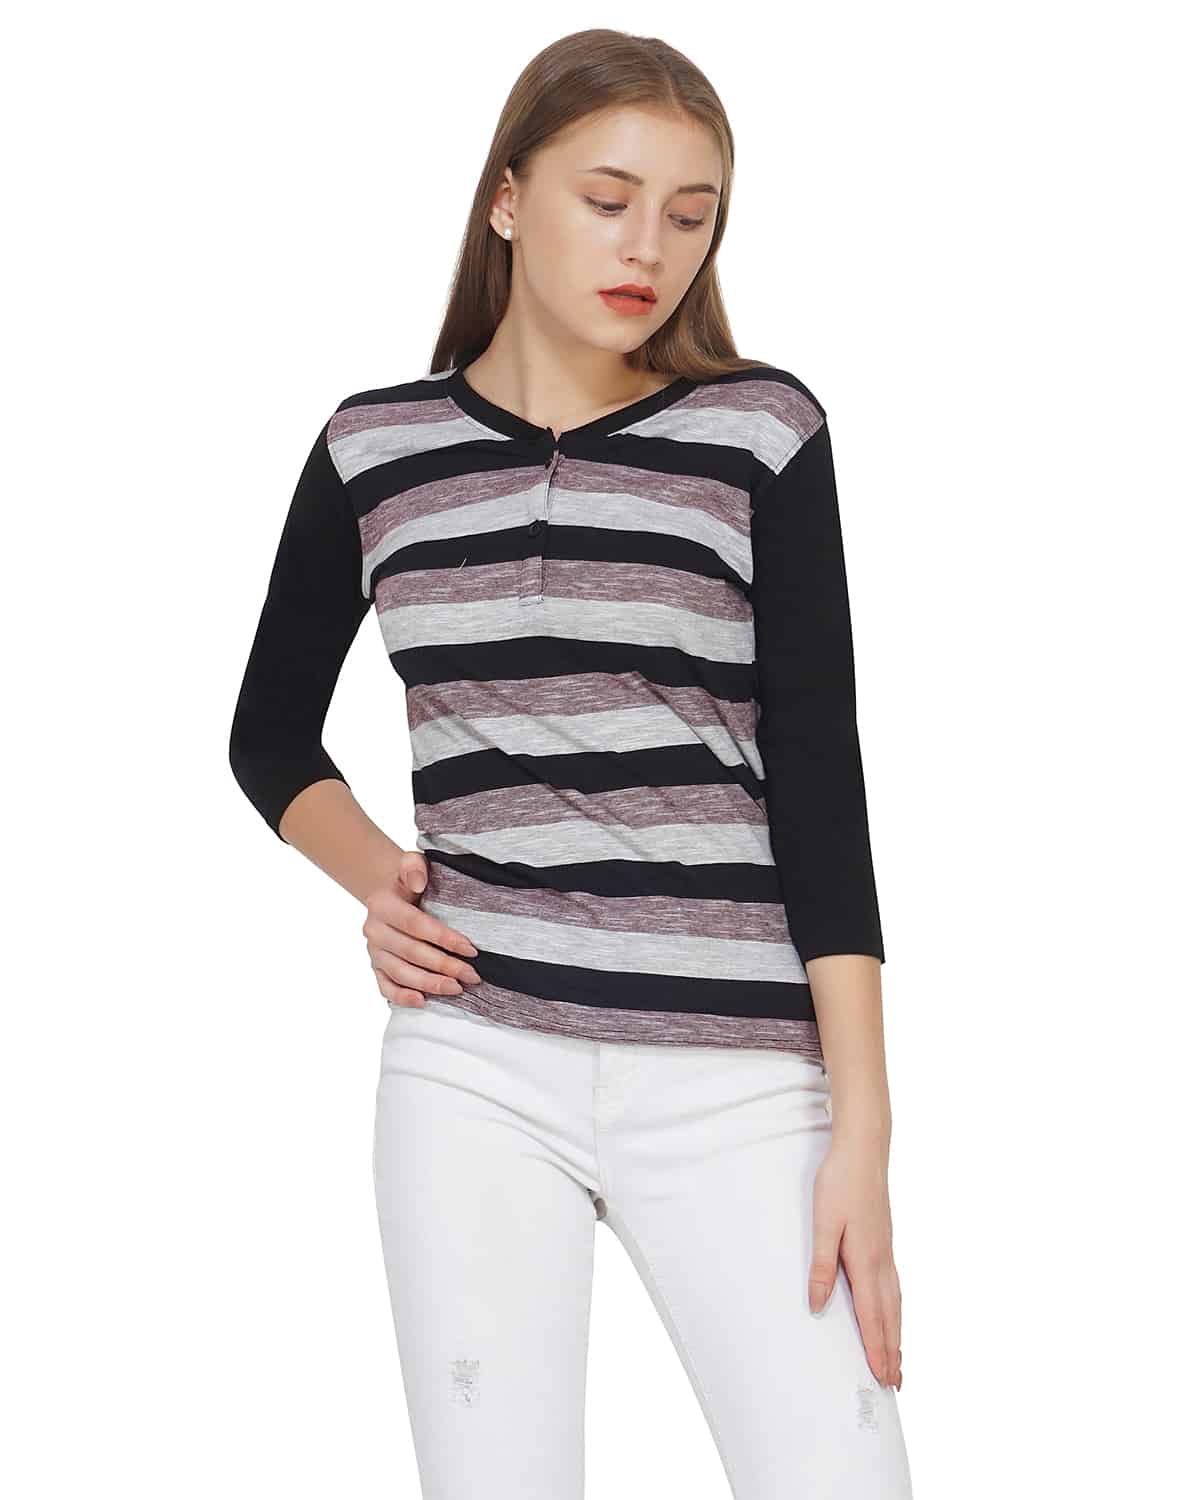 Black Stripe T-Shirt women multi full sleeves